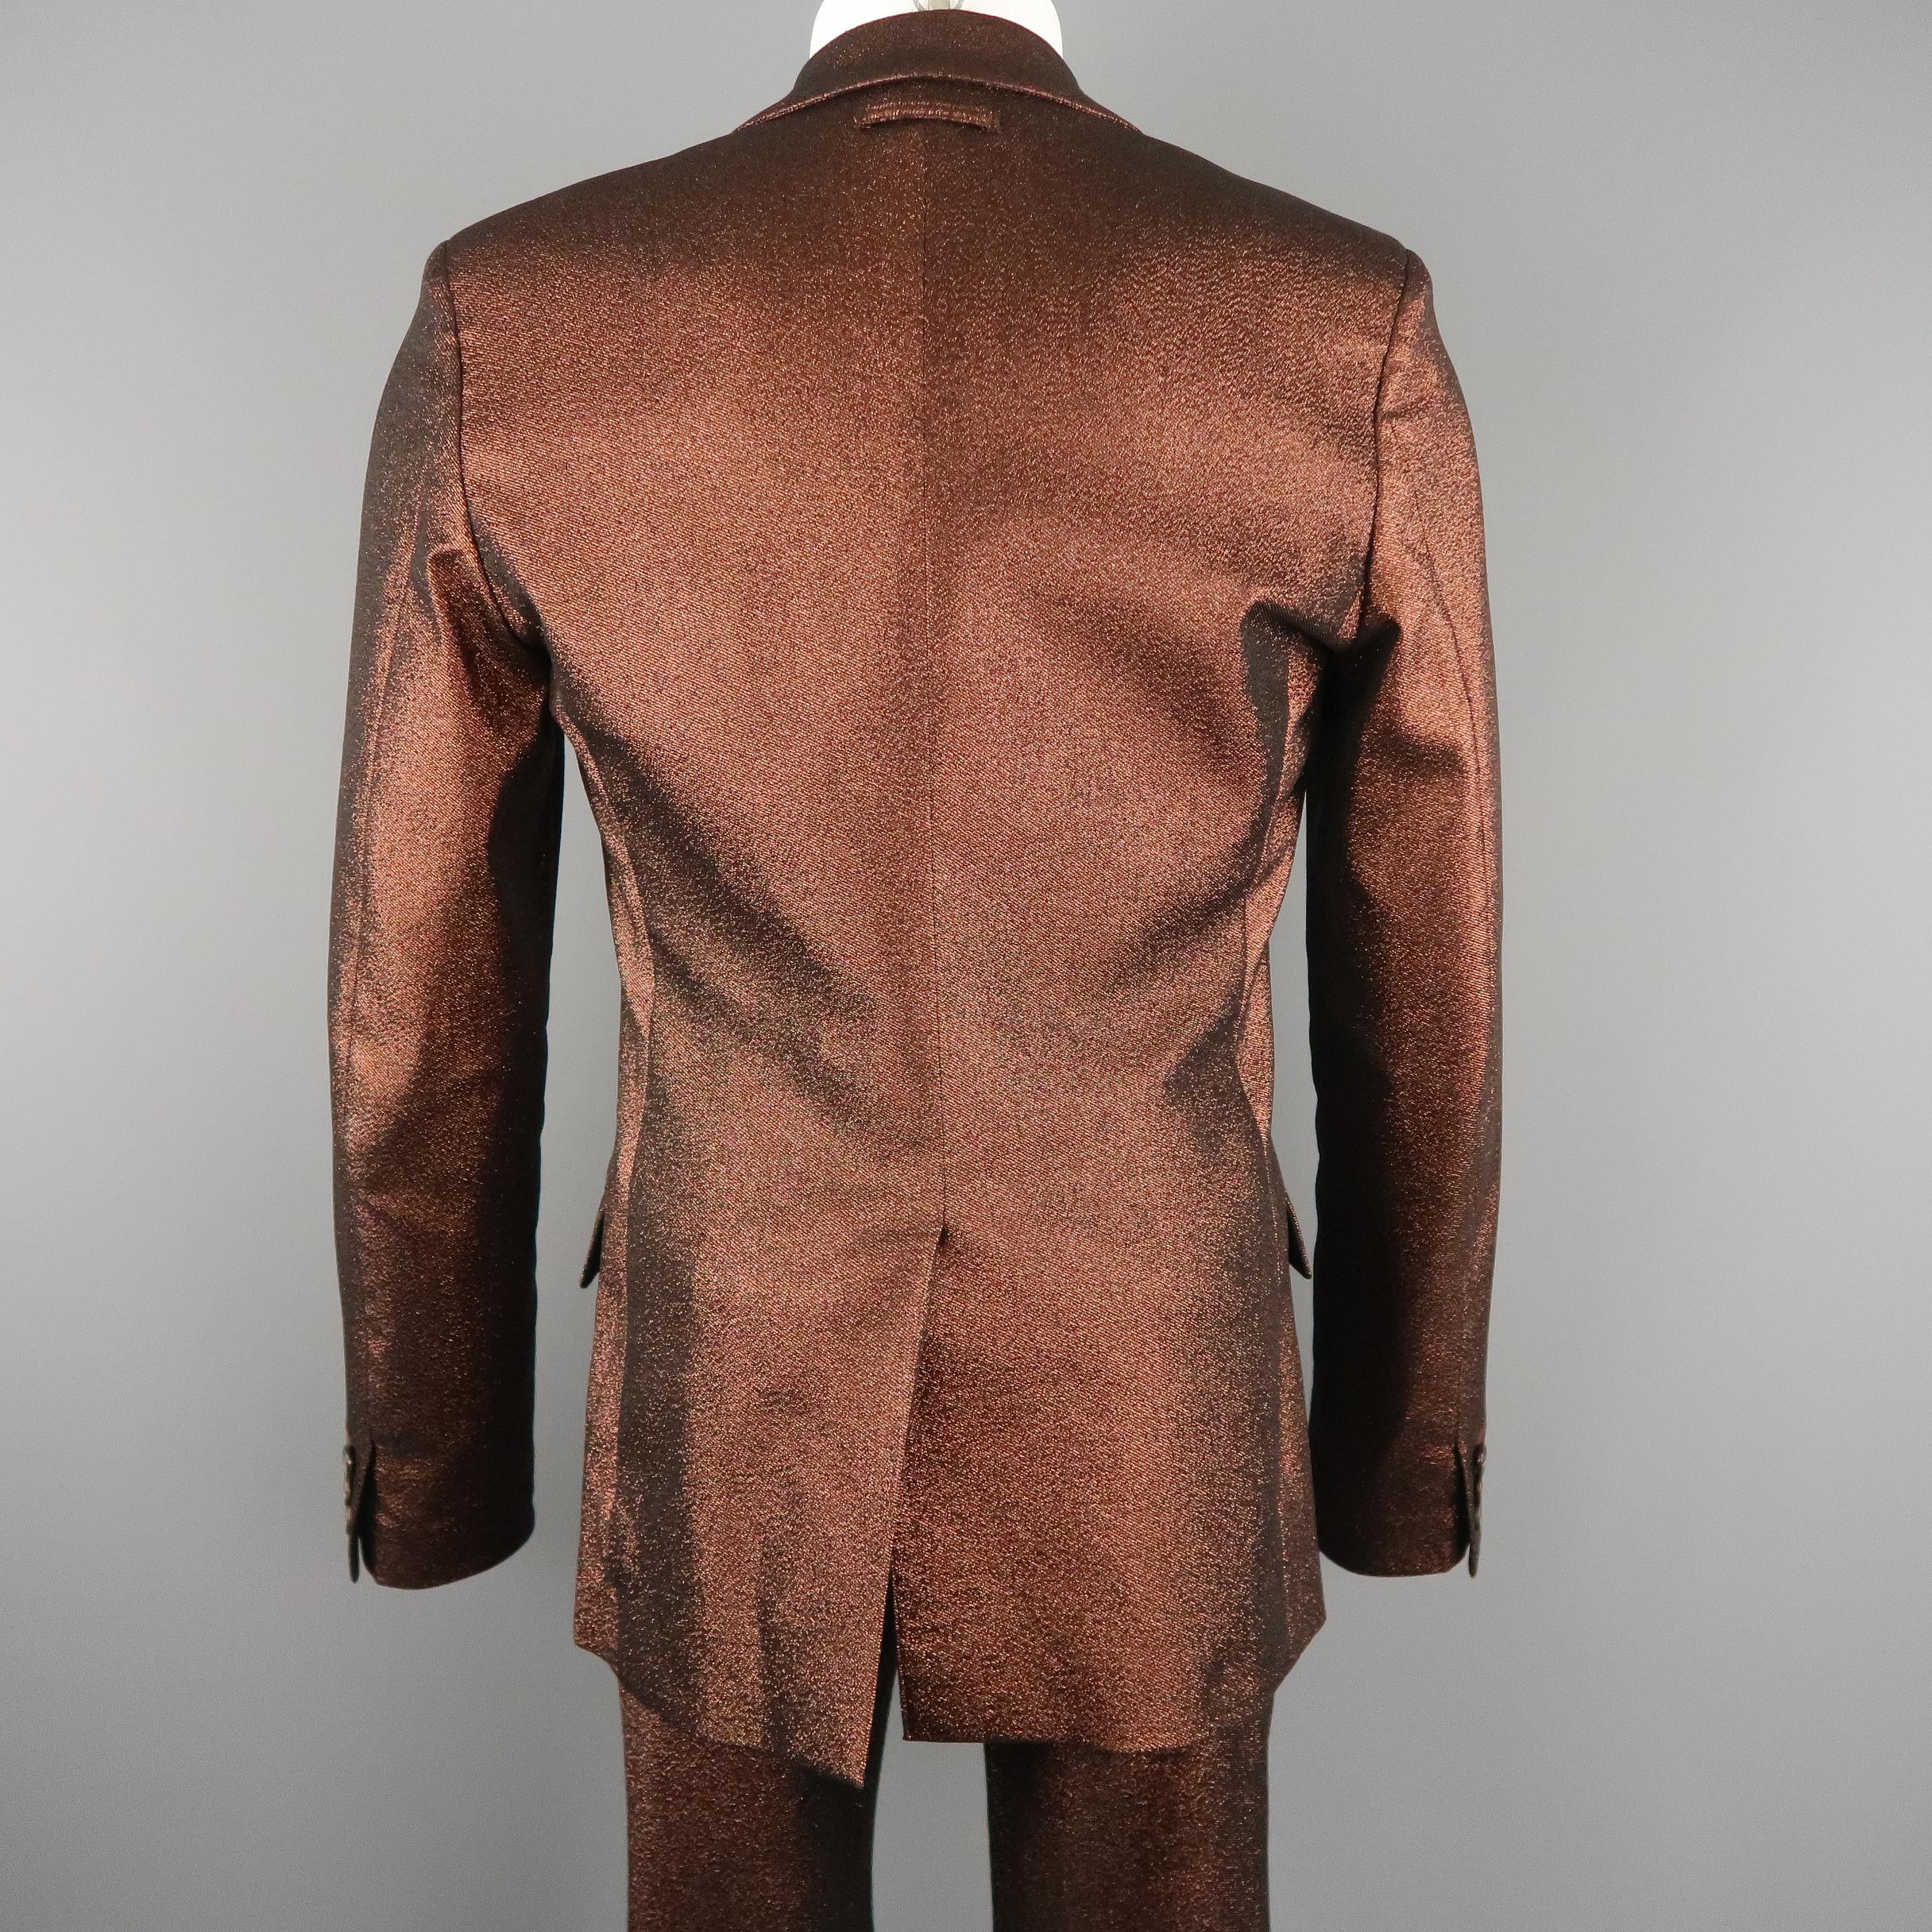 GAULTIER2 JEAN PAUL GAULTIER 38 Copper Metallic Sparkle Peak Lapel Skinny Suit 1